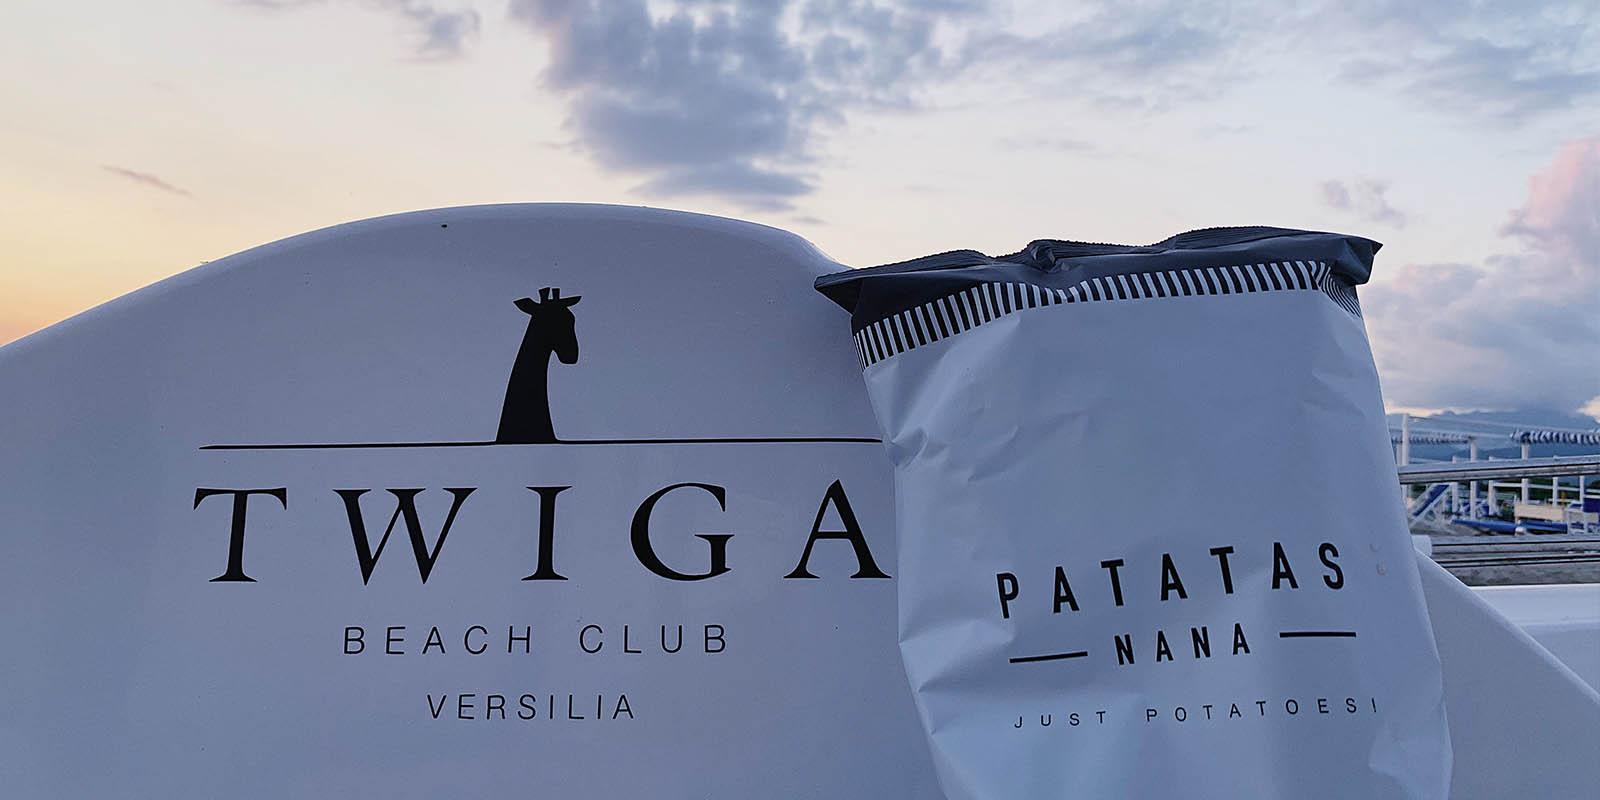 Il Blog del Twiga Beach Club parla di Patatas Nana!